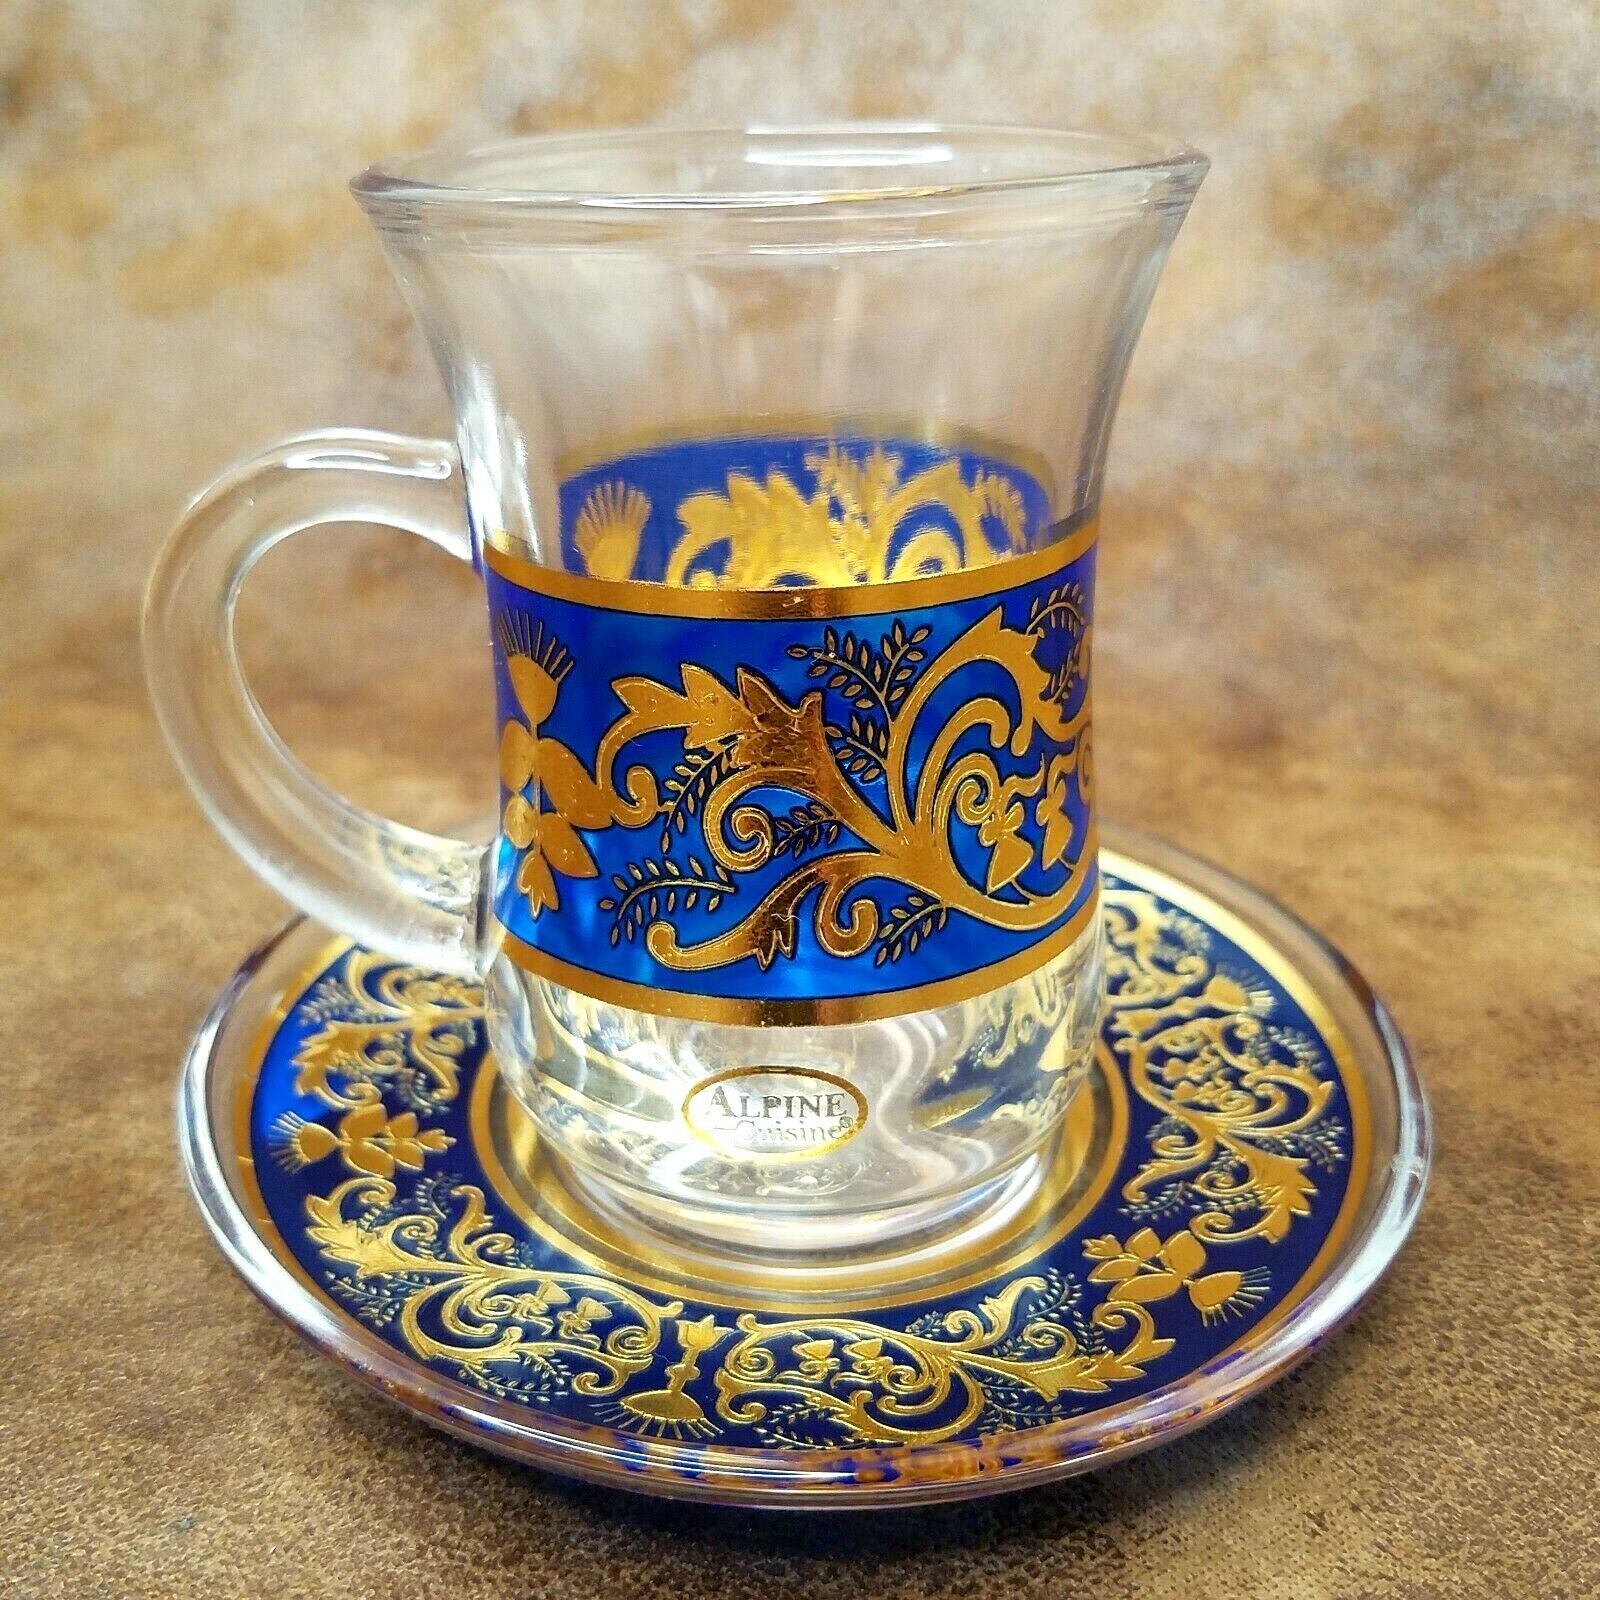 Alpine Cuisine Glass Espresso Turkish Tea Cup and Saucer Set Blue Gold